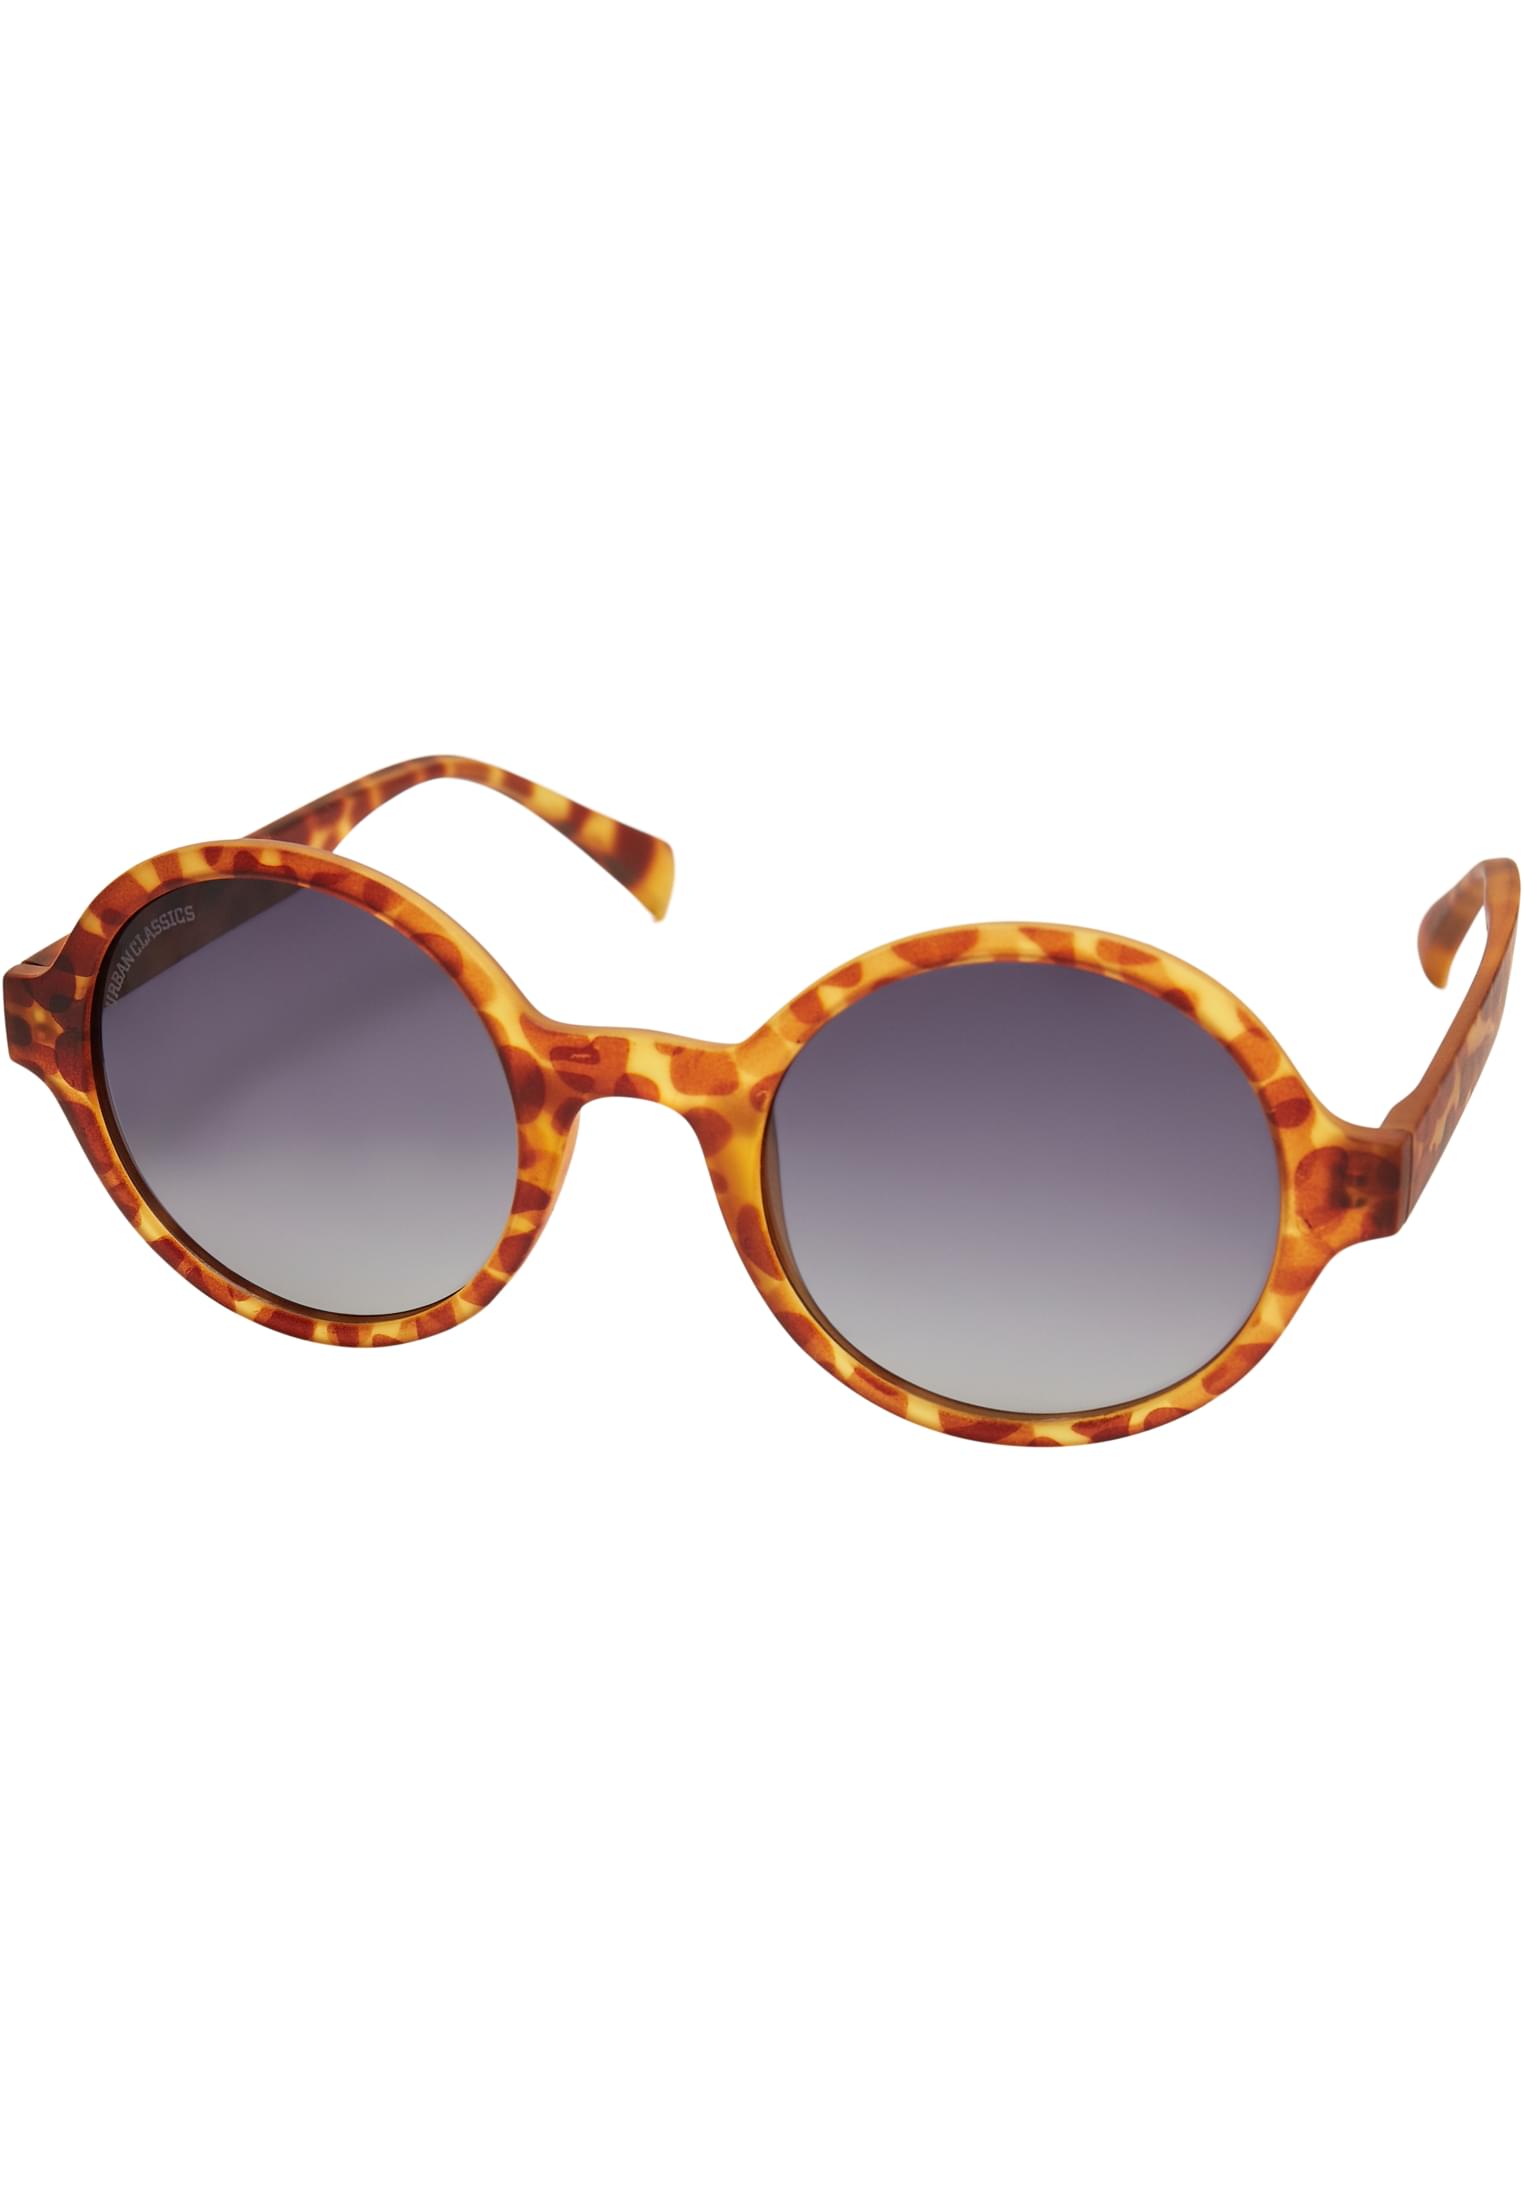 Accessoires Sunglasses Retro Funk UC in Farbe brown leo/grey